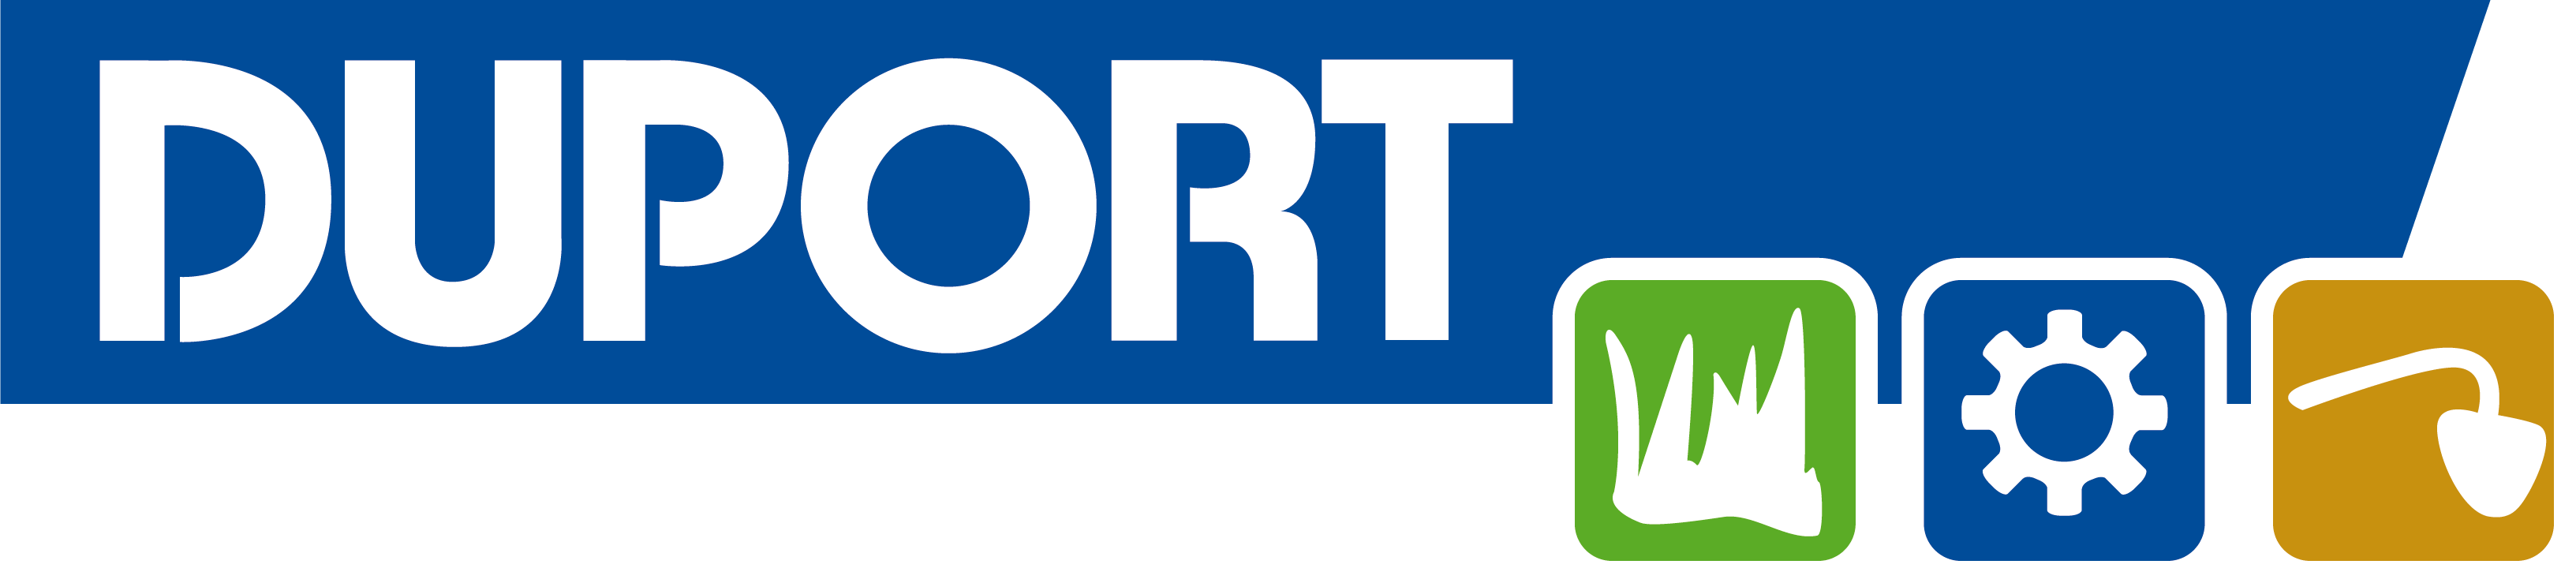 duport_logo_png